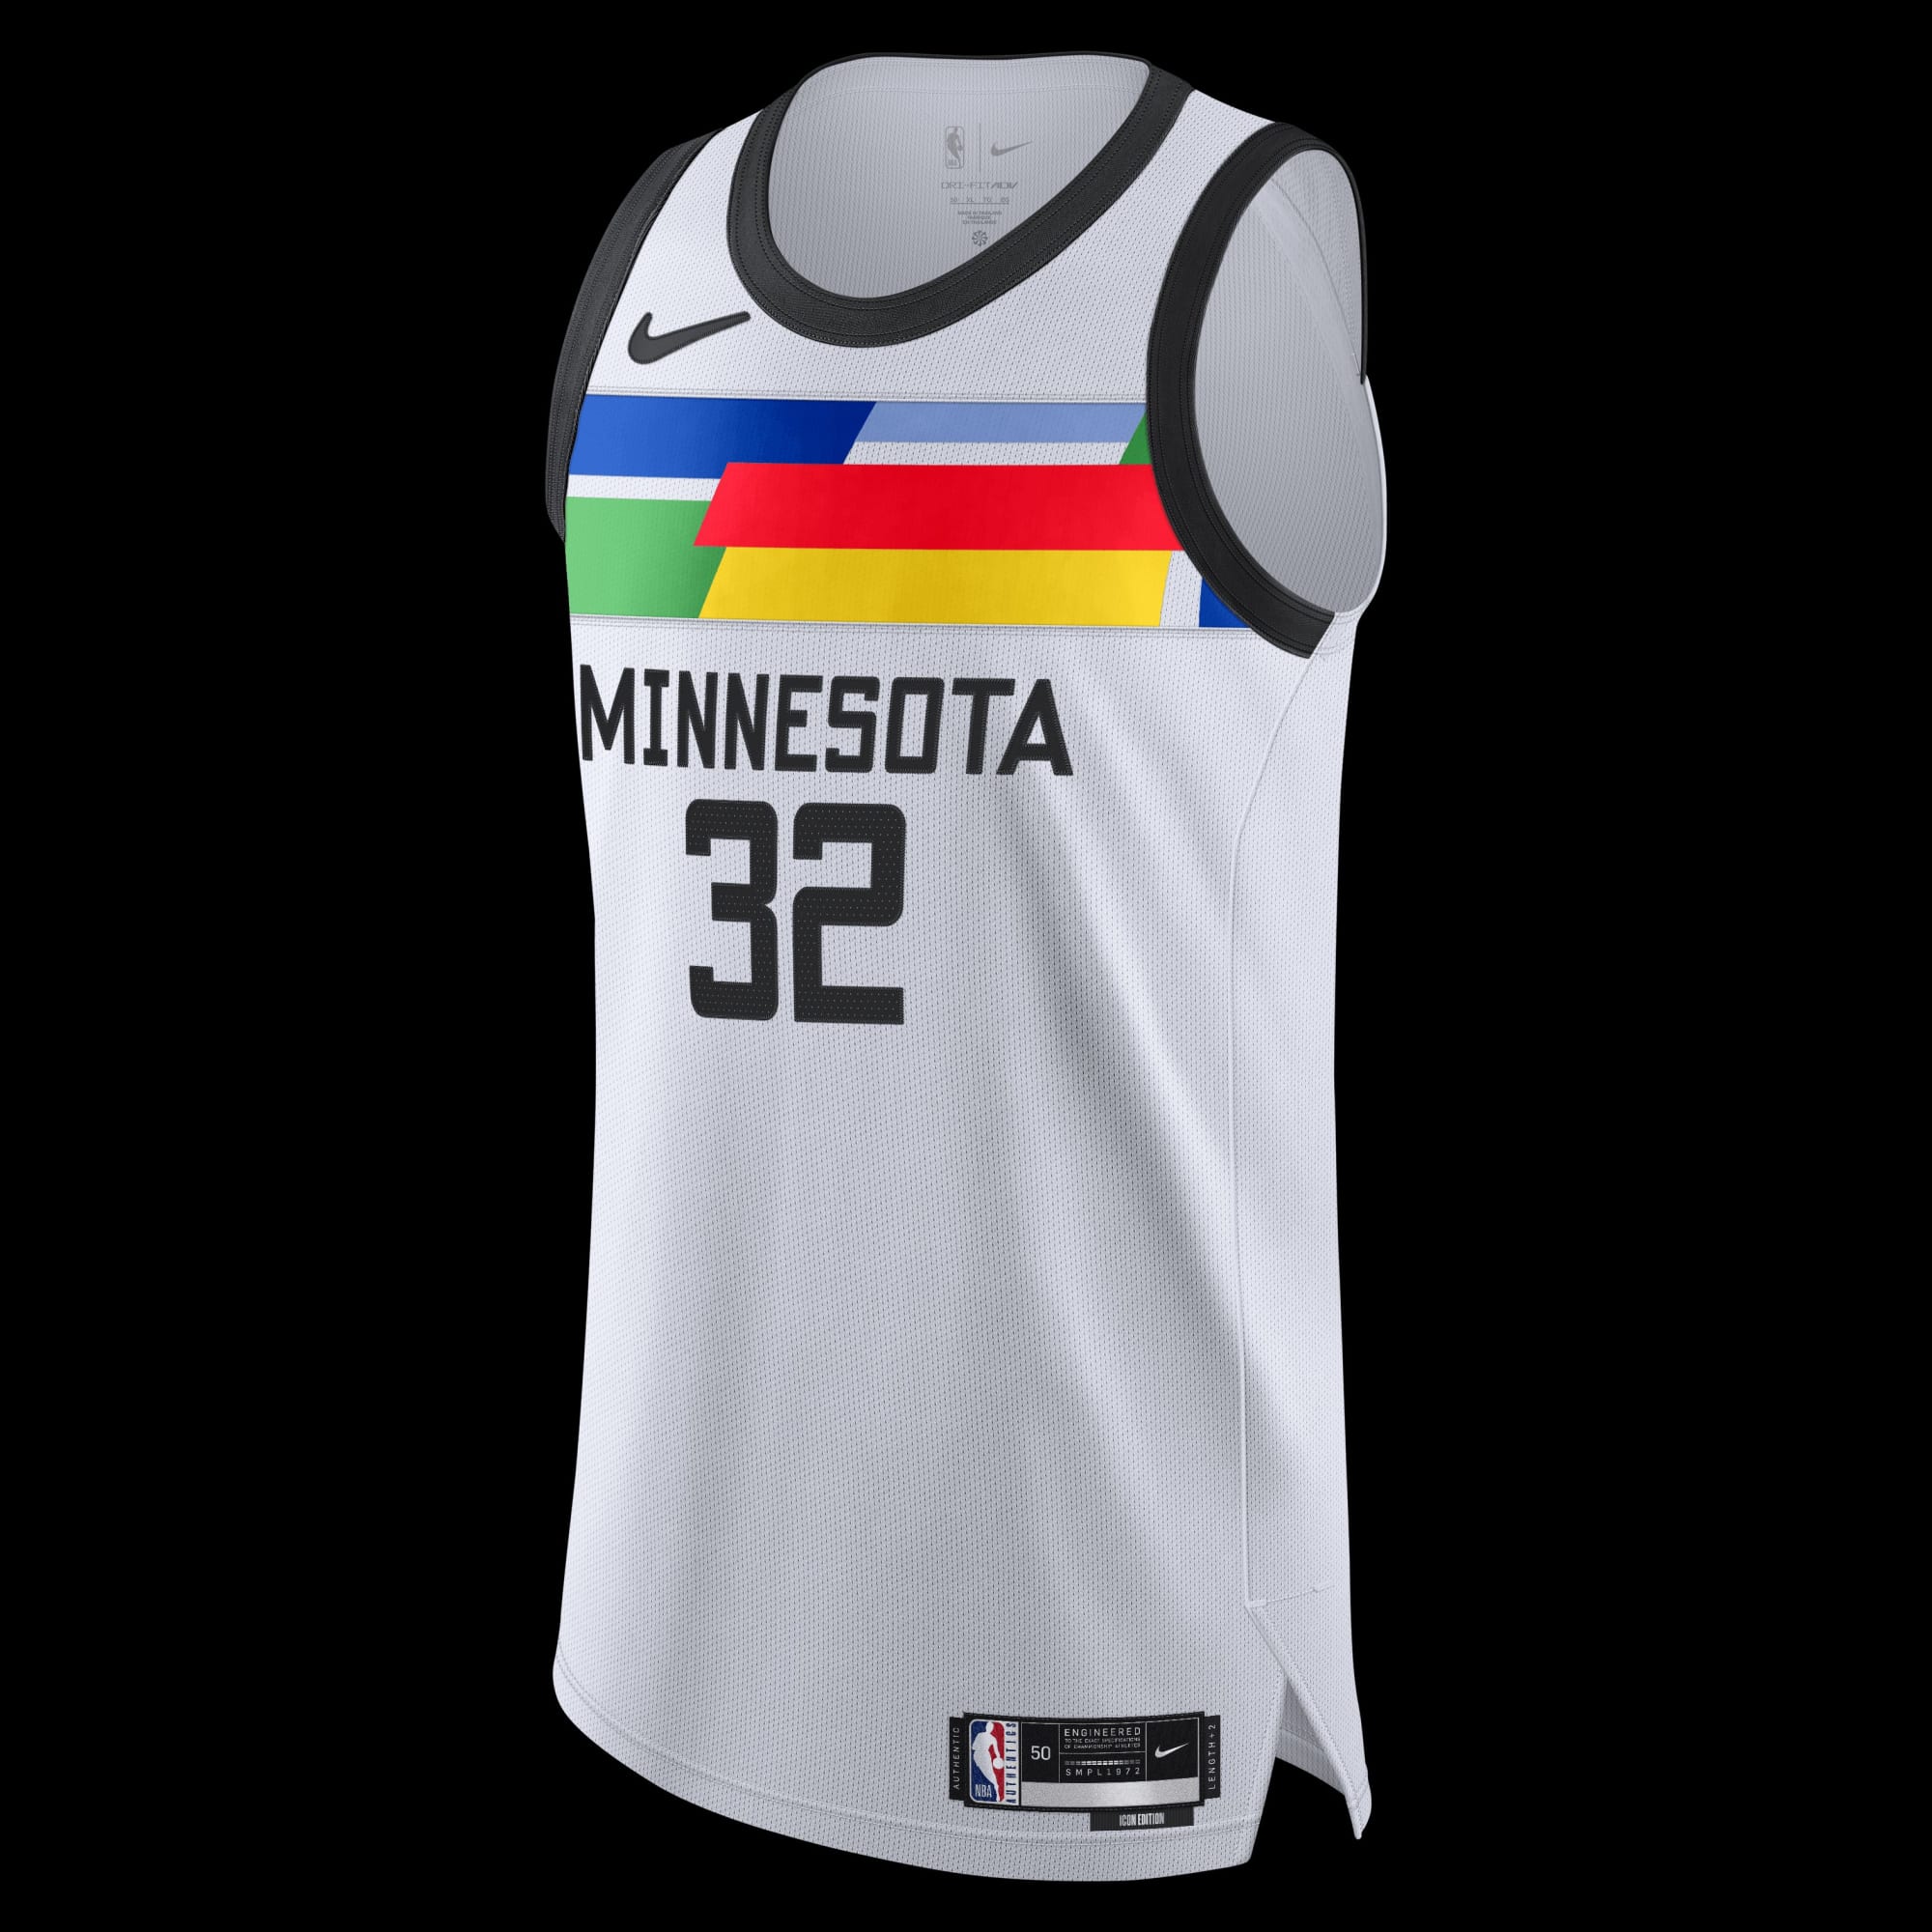 Minnesota Timberwolves Merchandise, Timberwolves Apparel, Gear